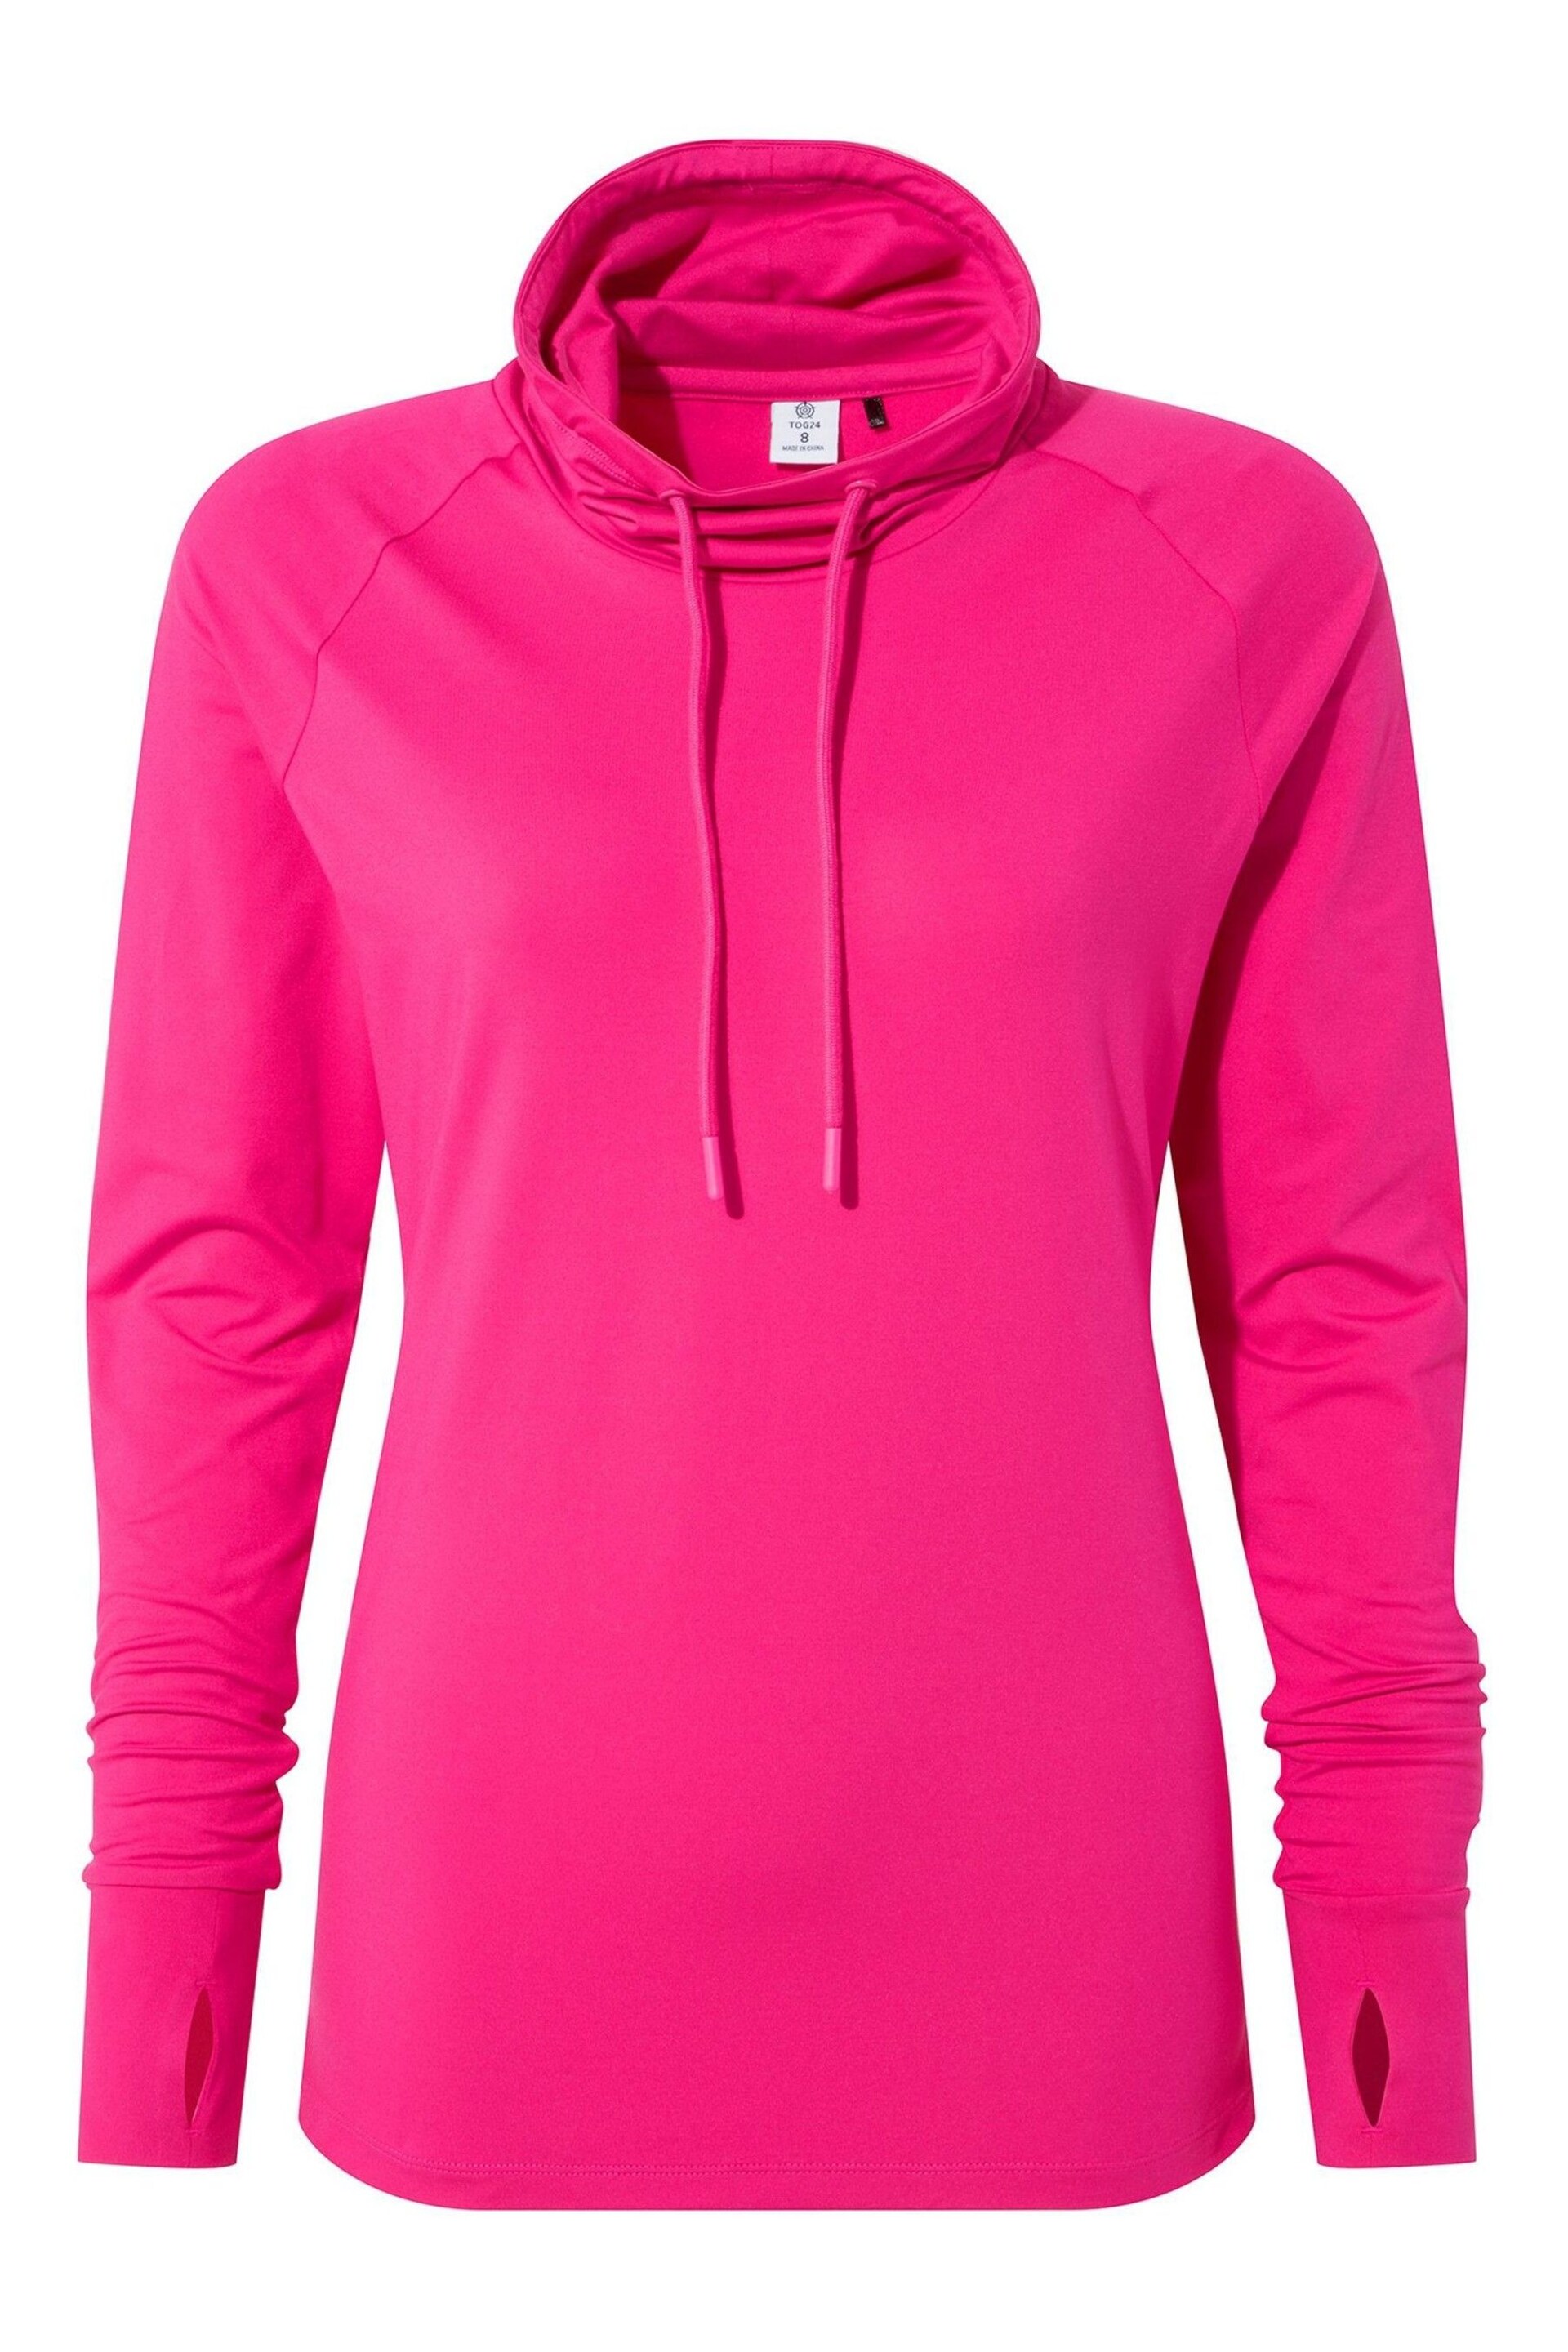 Tog 24 Pink Vibrant Dunn Tech Sweatshirt - Image 9 of 9